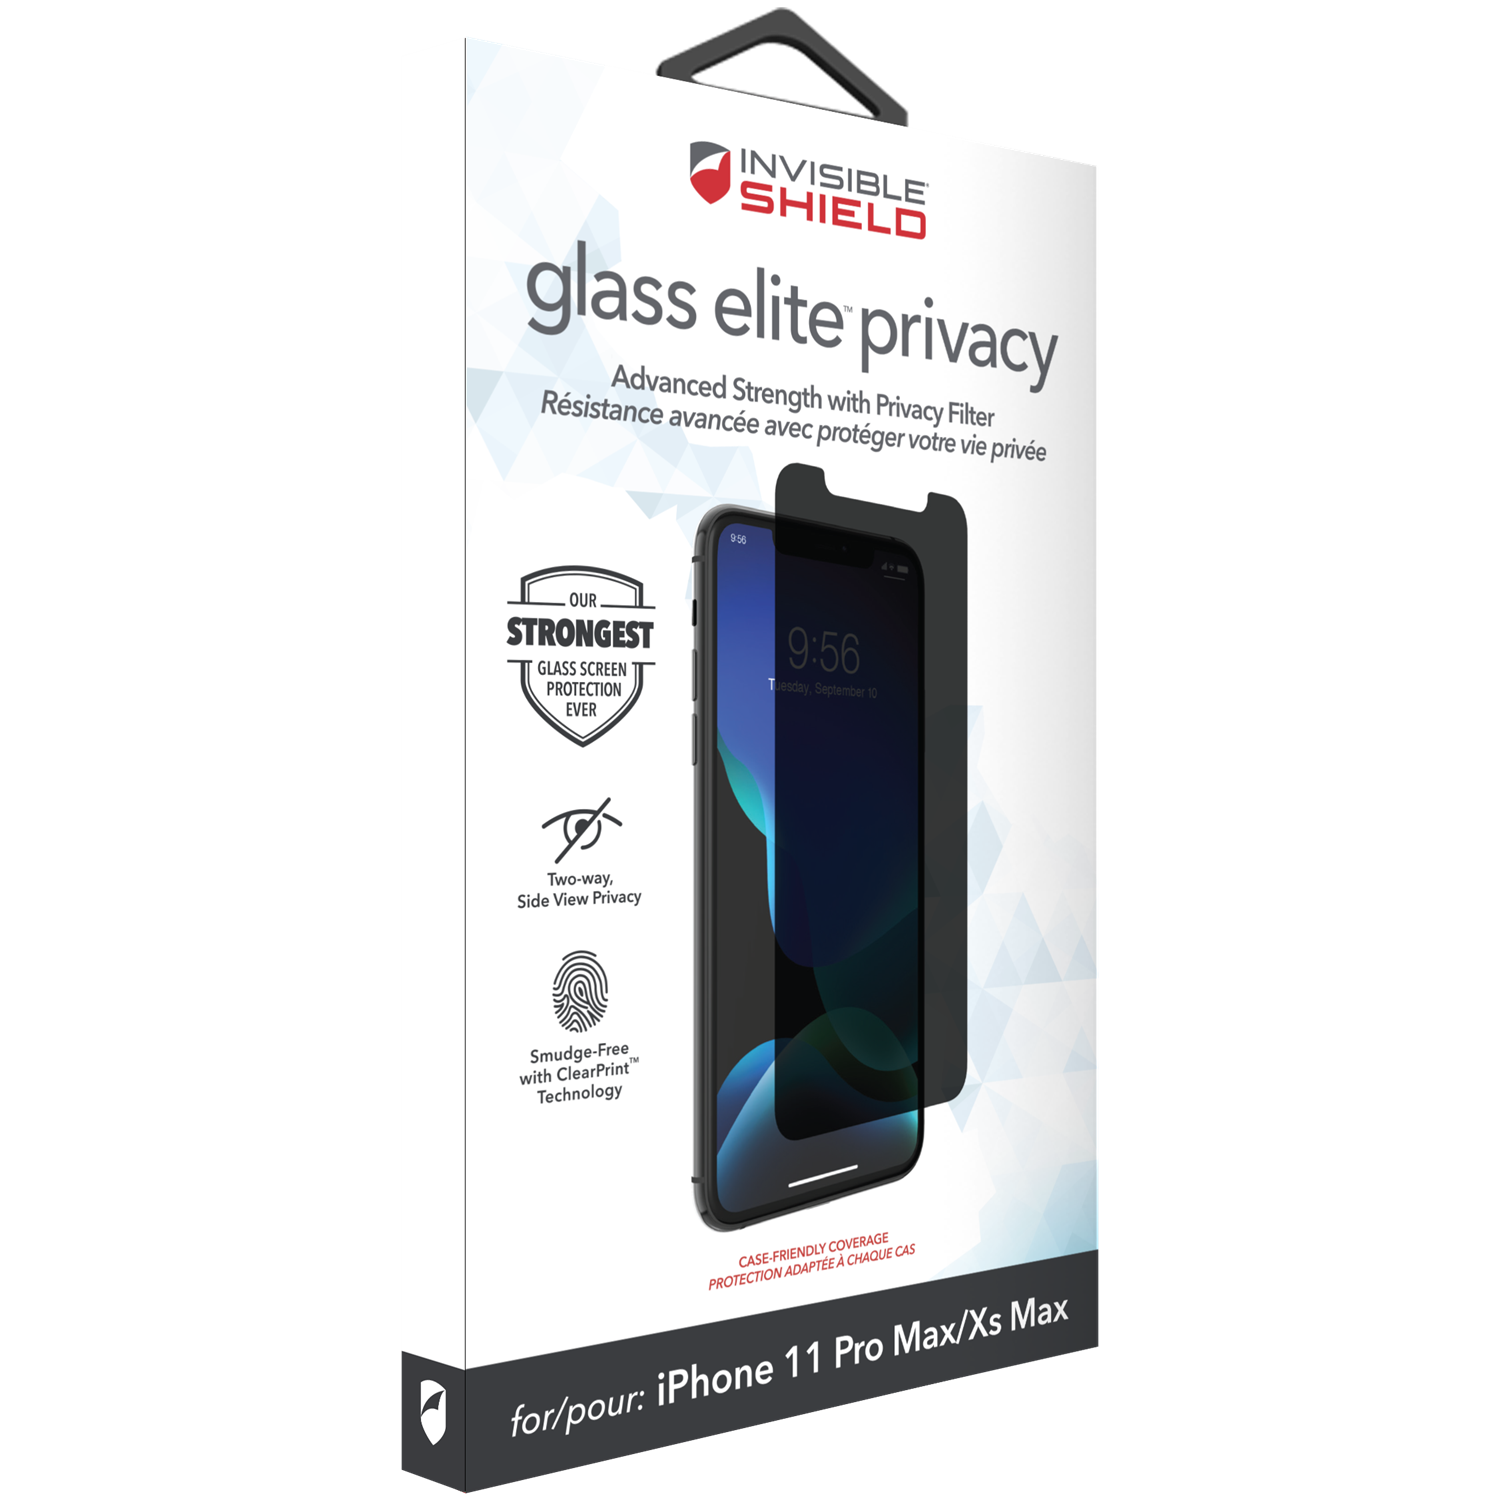 InvisibleShield Glass Elite Privacy iPhone 11 Pro Max/XS Max